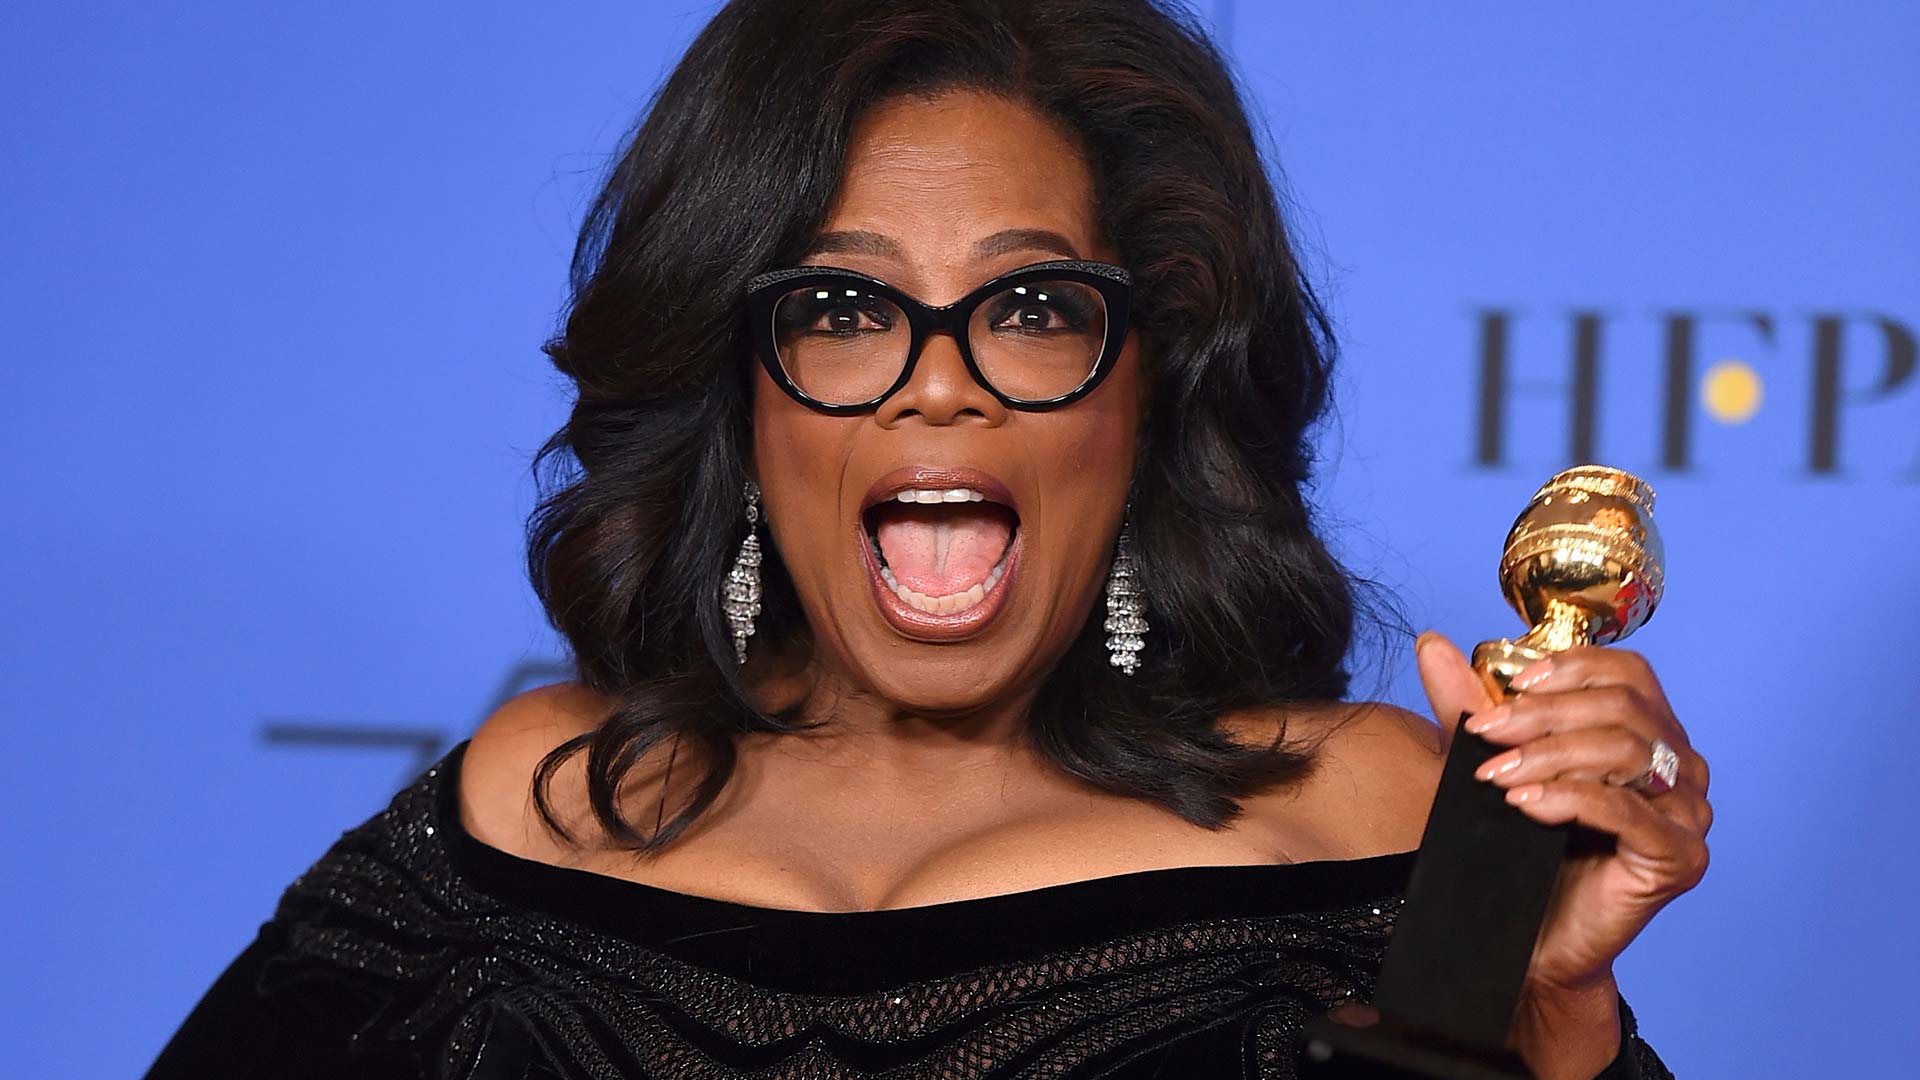 El discurso de Oprah Winfrey dispara las acciones de Weight Watchers